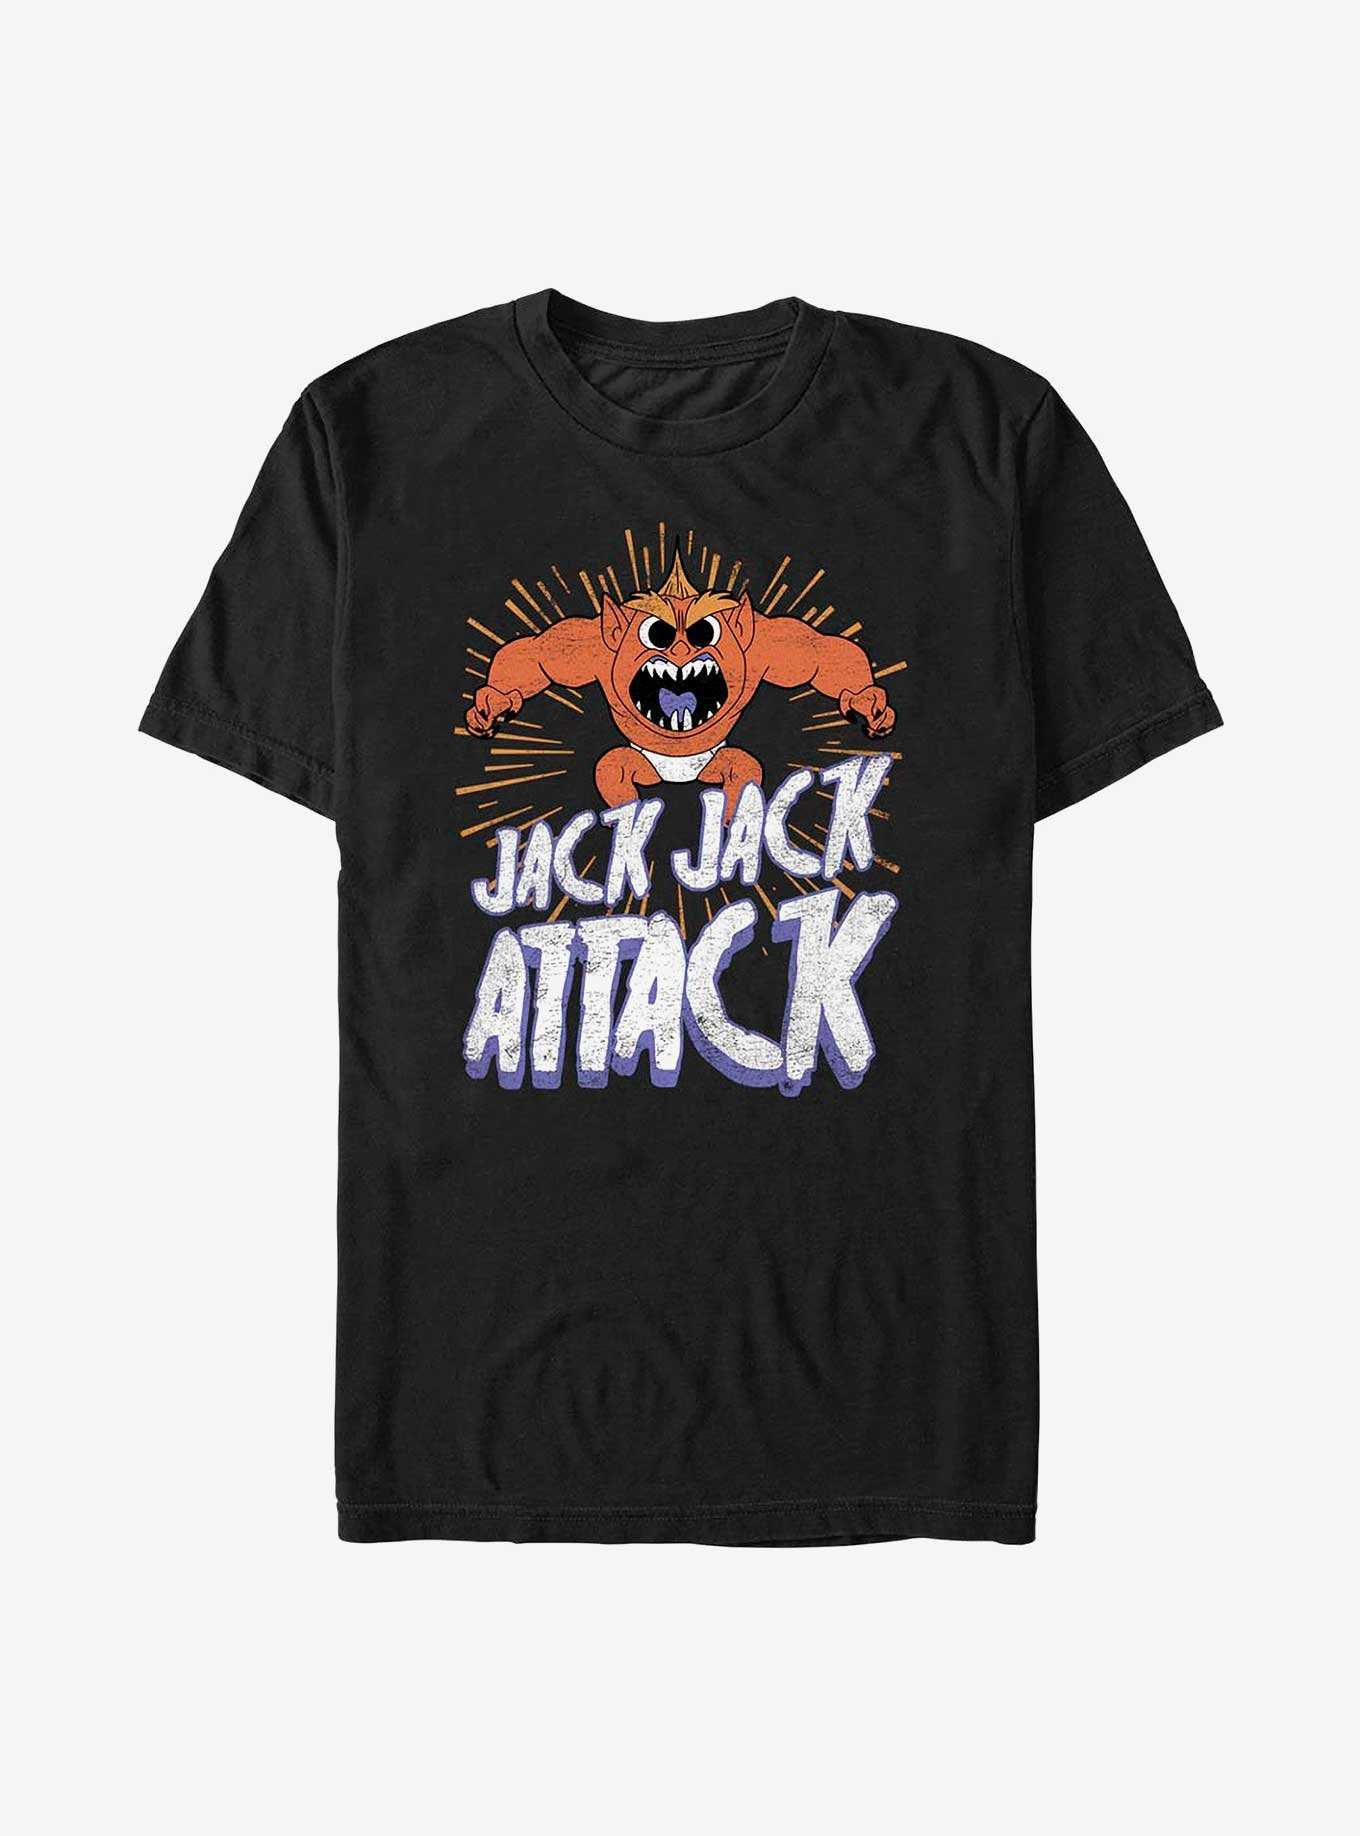 Disney Pixar The Incredibles Jack Jack Horror T-Shirt, , hi-res